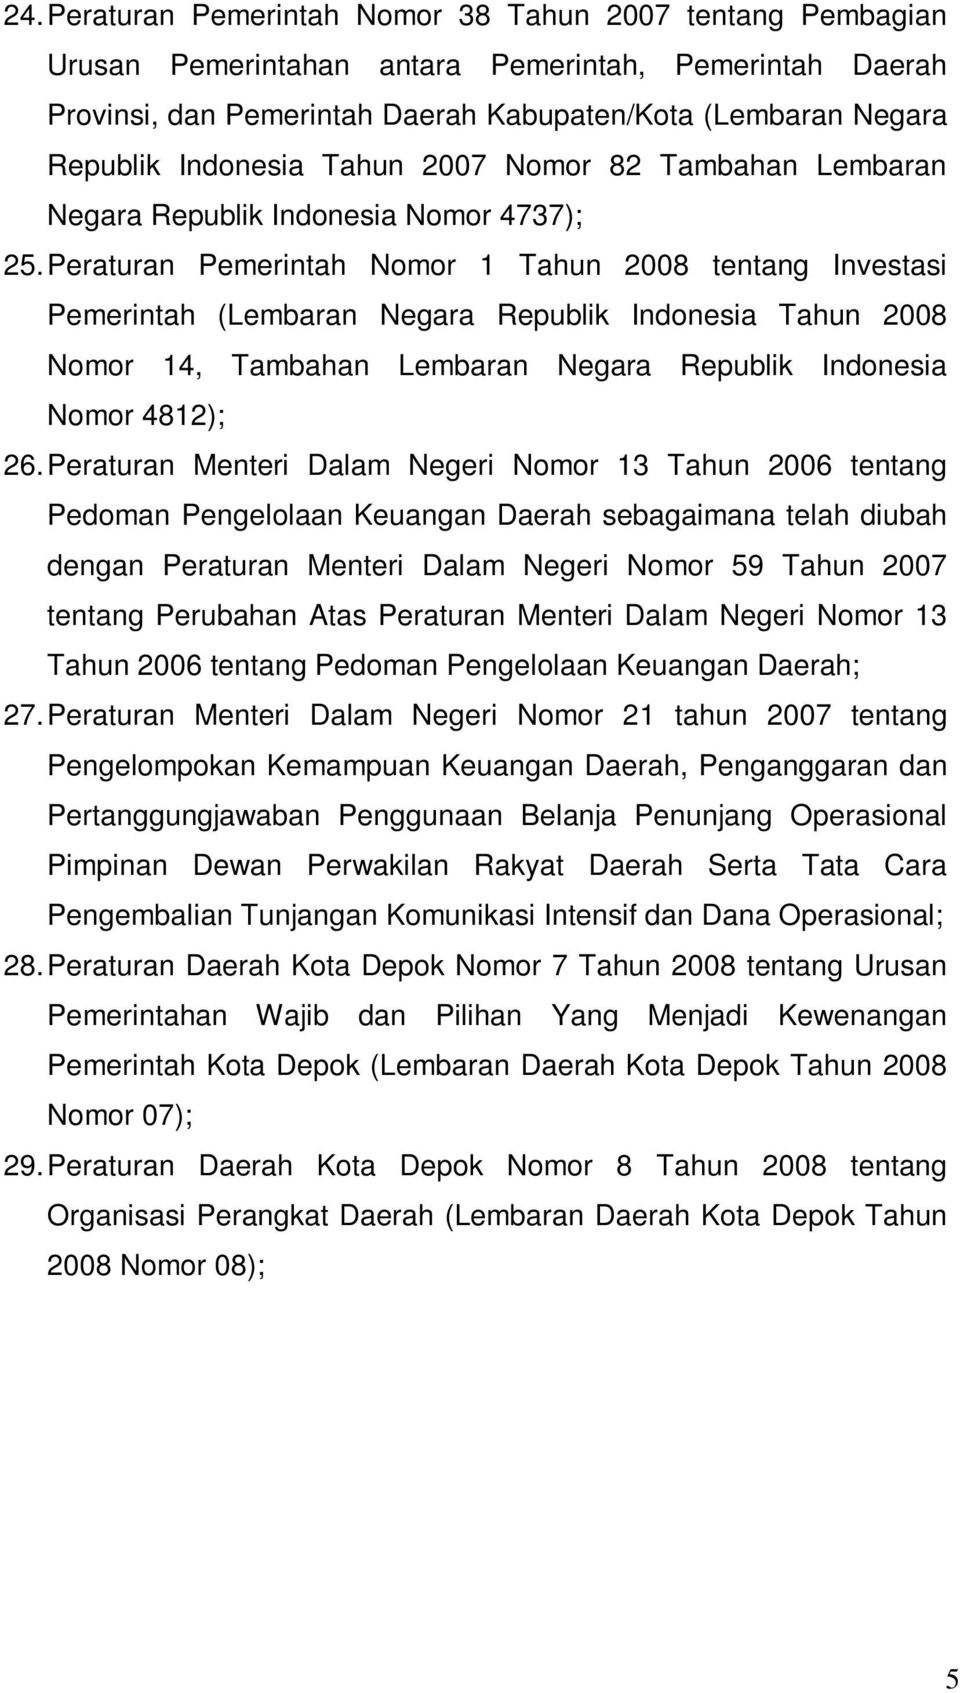 Peraturan Pemerintah Nomor 1 Tahun 2008 tentang Investasi Pemerintah (Lembaran Negara Republik Indonesia Tahun 2008 Nomor 14, Tambahan Lembaran Negara Republik Indonesia Nomor 4812); 26.